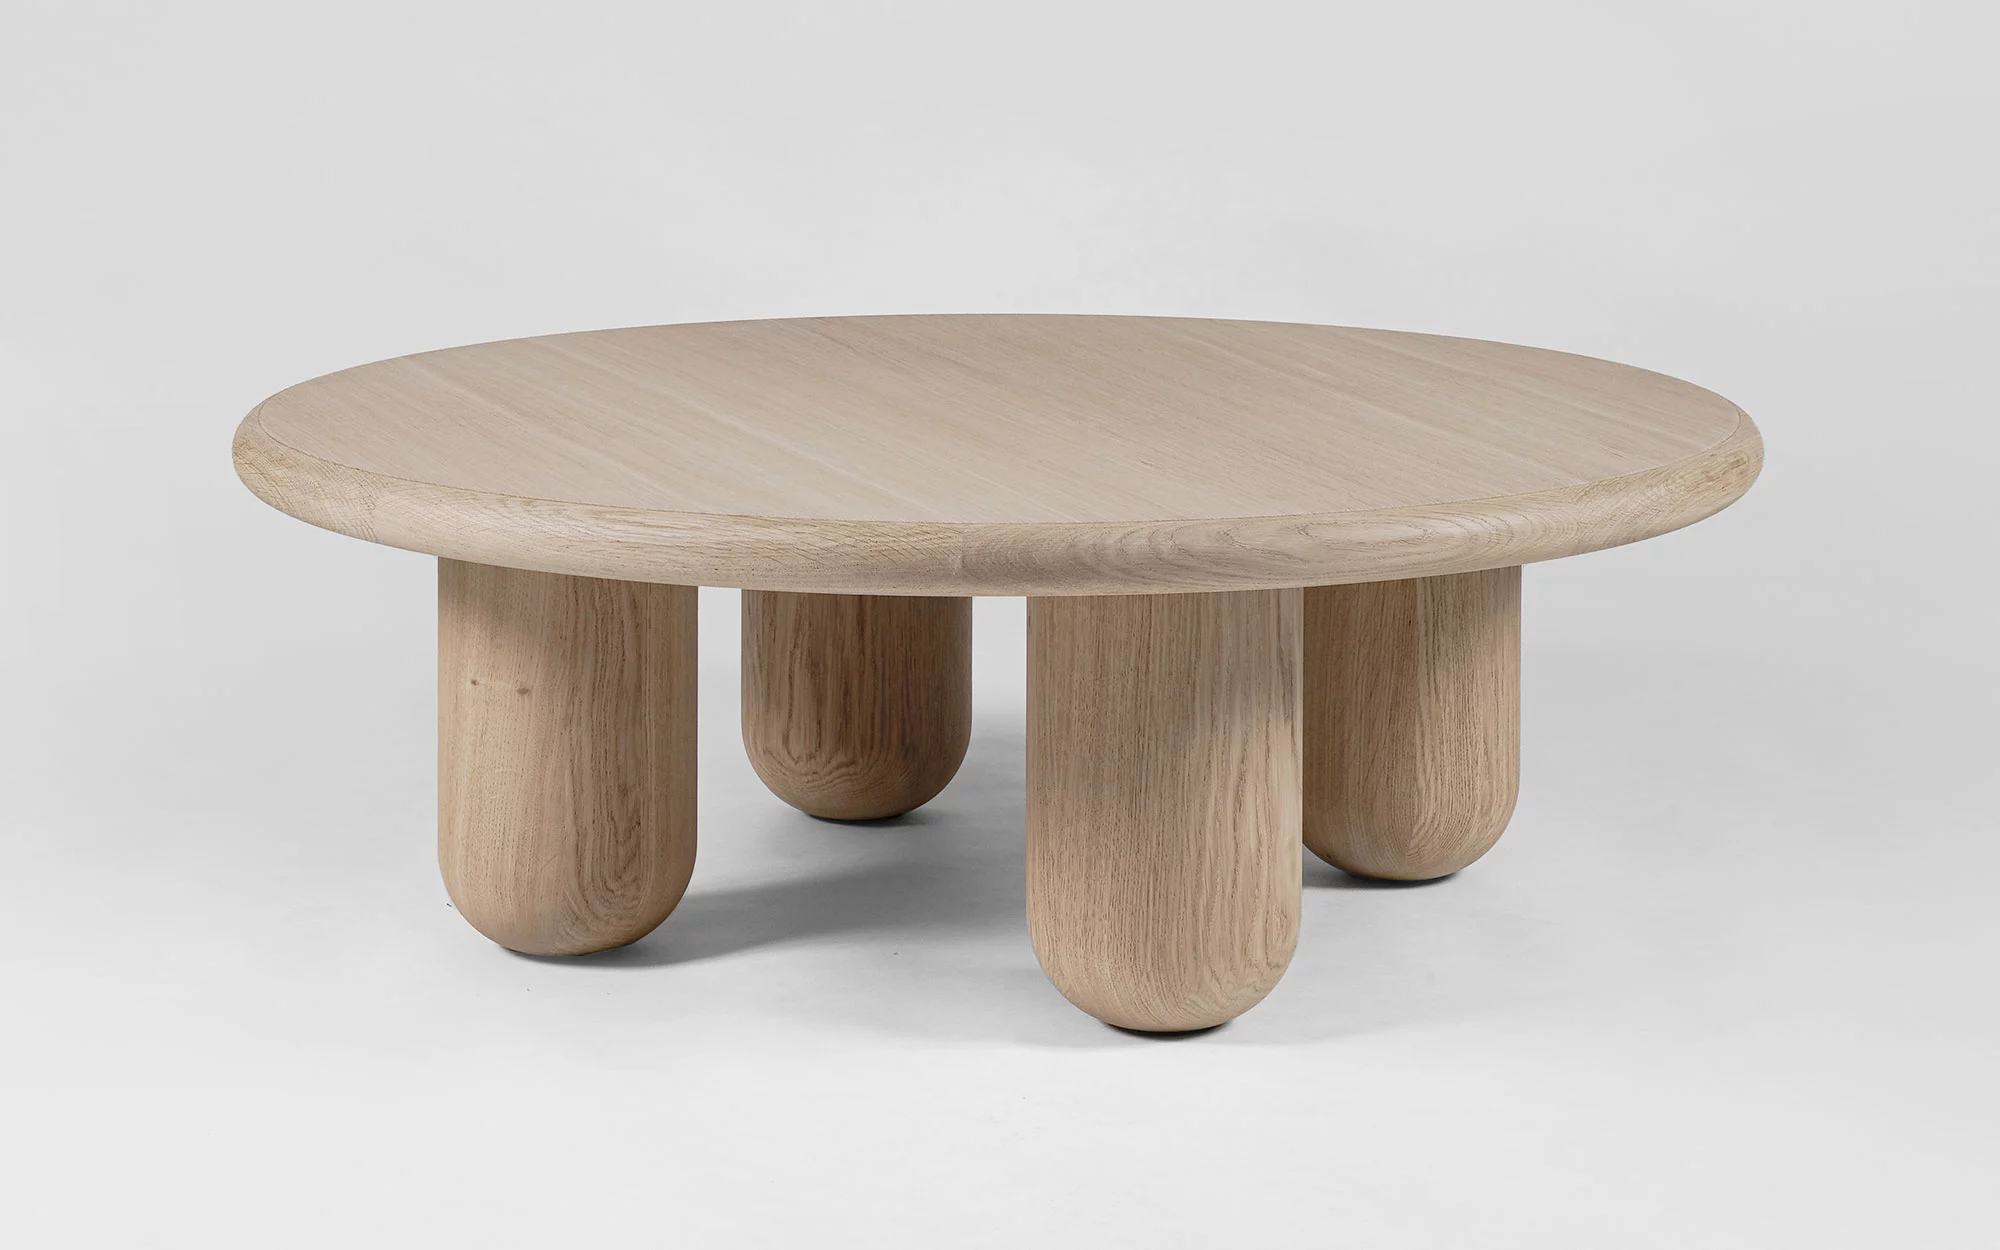 Organism coffee table - Jaime Hayon - Side table - Galerie kreo